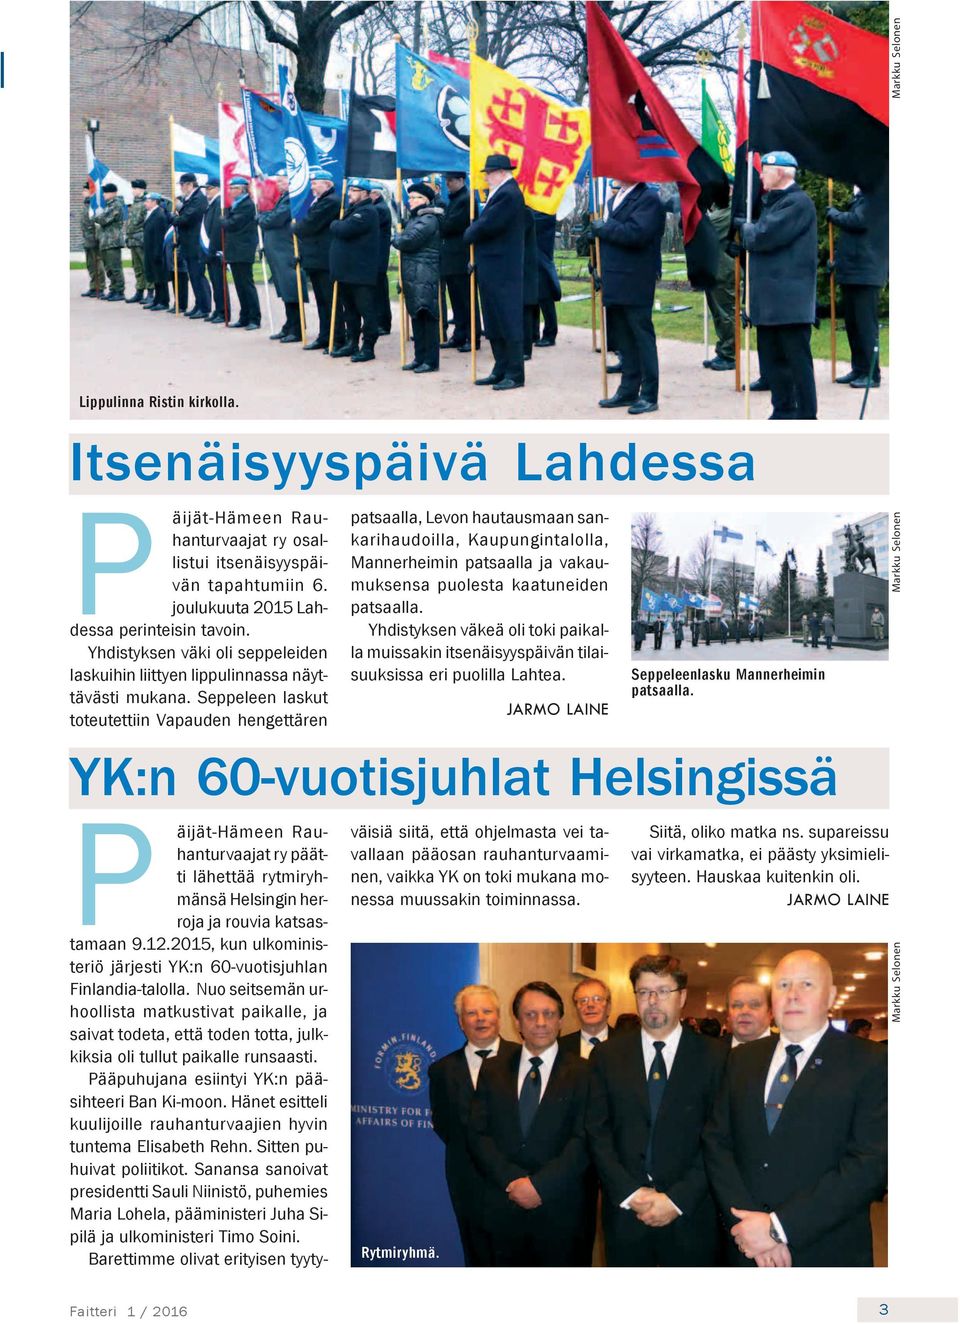 Seppeleen laskut toteutettiin Vapauden hengettären YK:n 60-vuotisjuhlat Helsingissä patsaalla, Levon hautausmaan sankarihaudoilla, Kaupungintalolla, Mannerheimin patsaalla ja vakaumuksensa puolesta